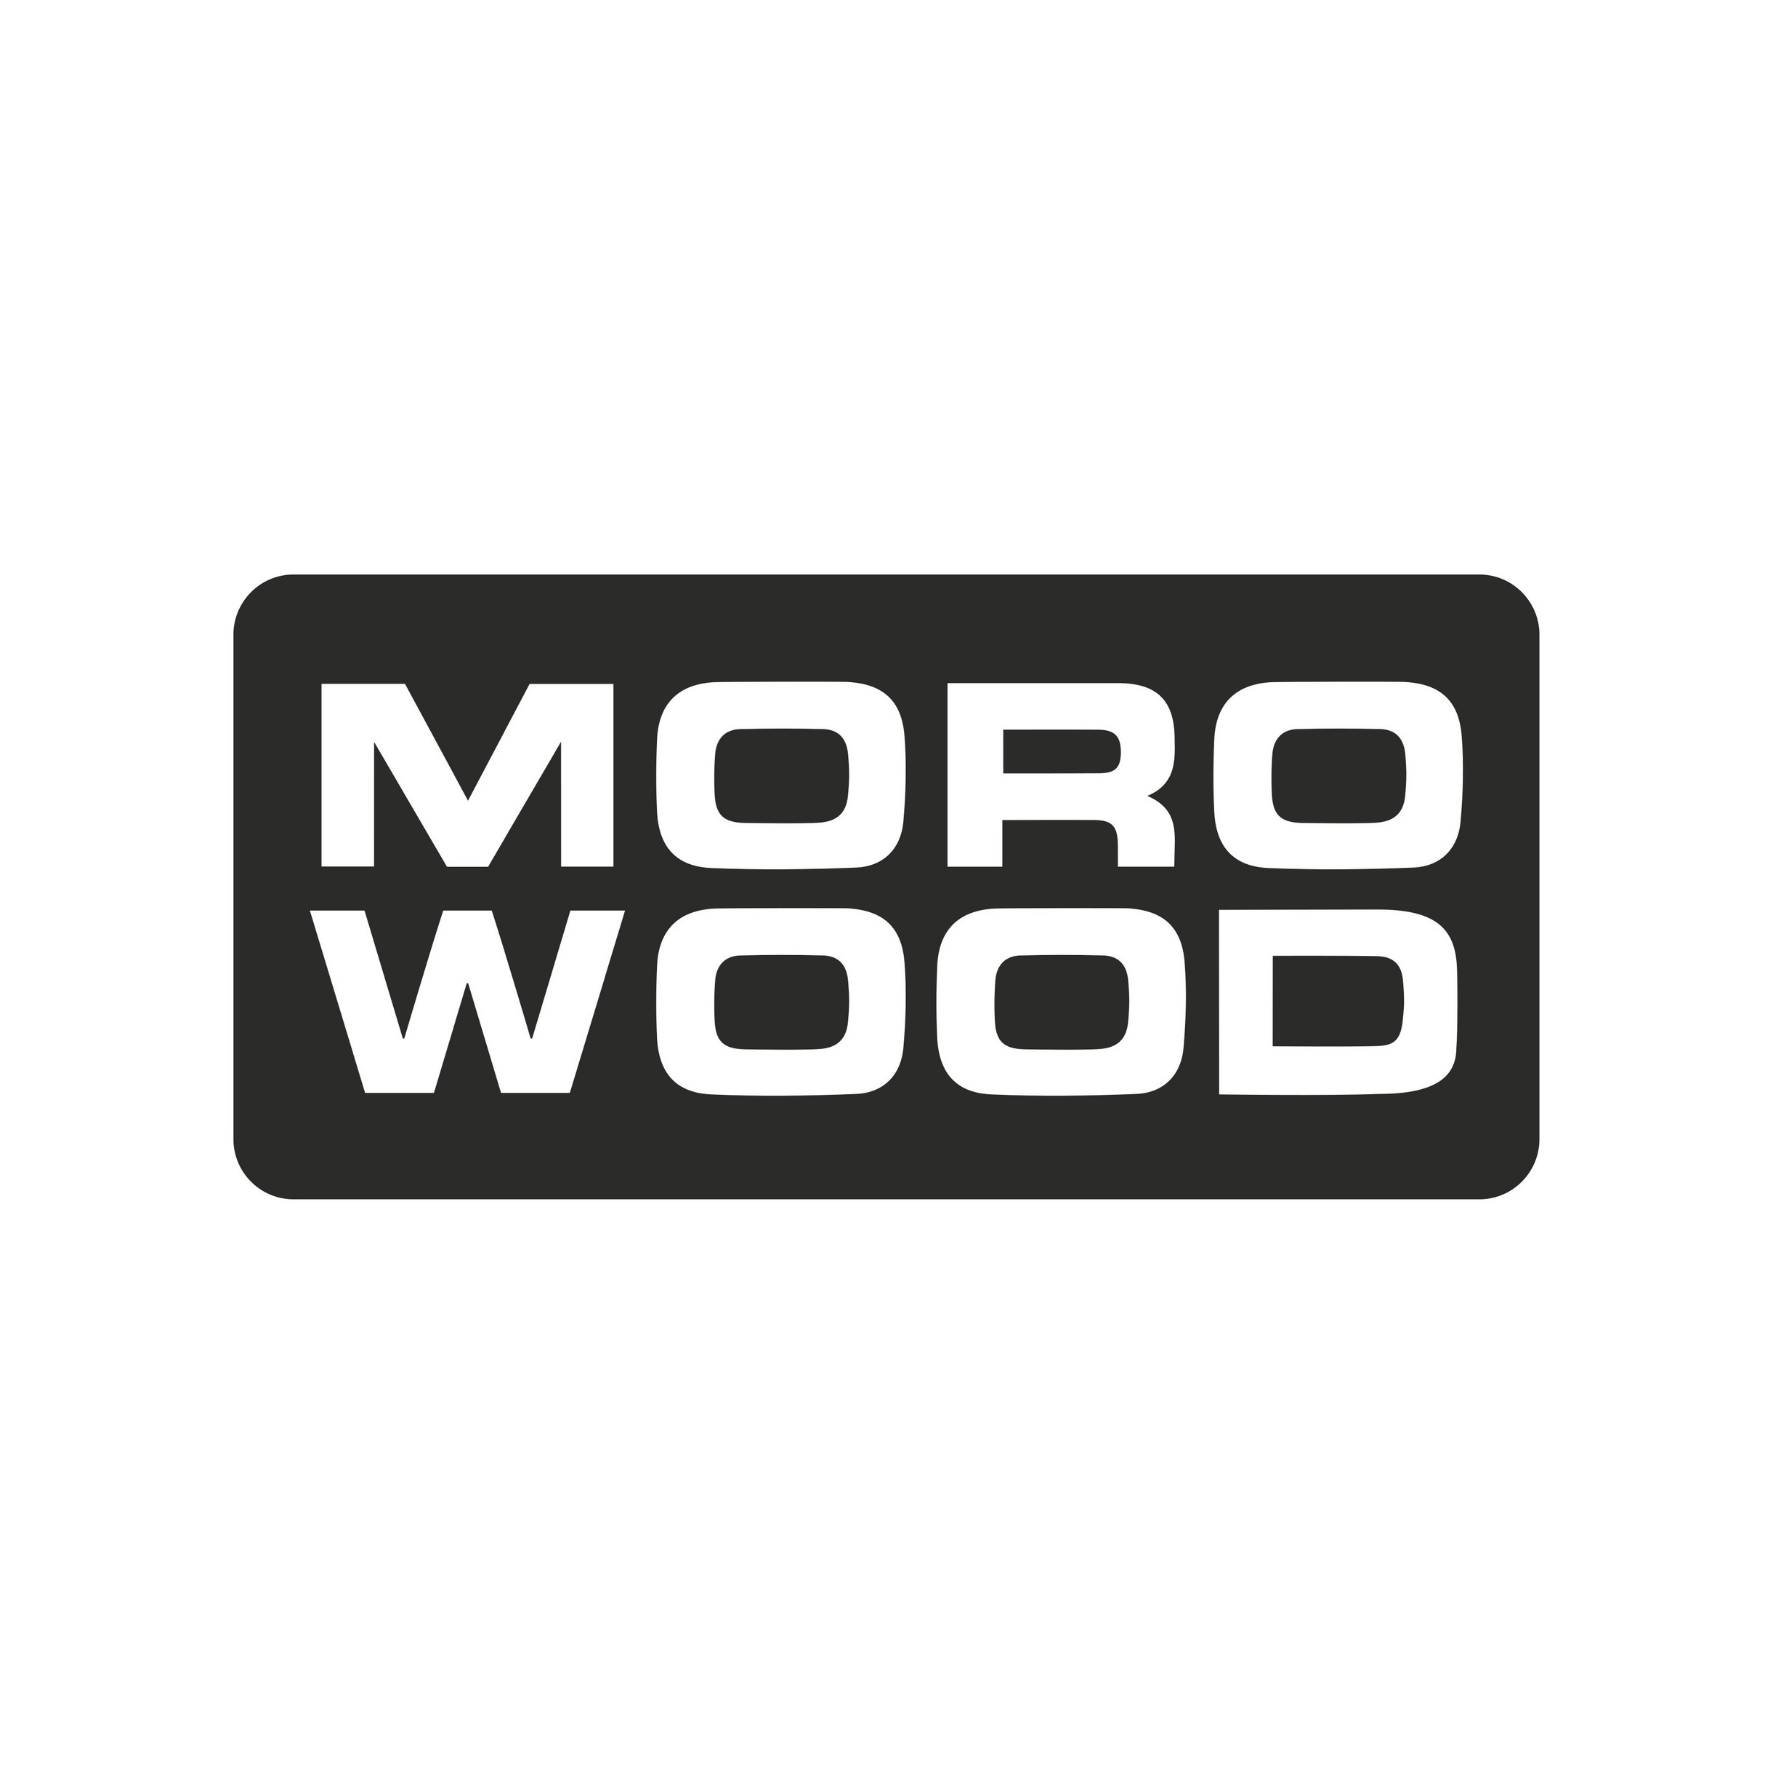 MOROWOOD logo (15 x 15 cm)